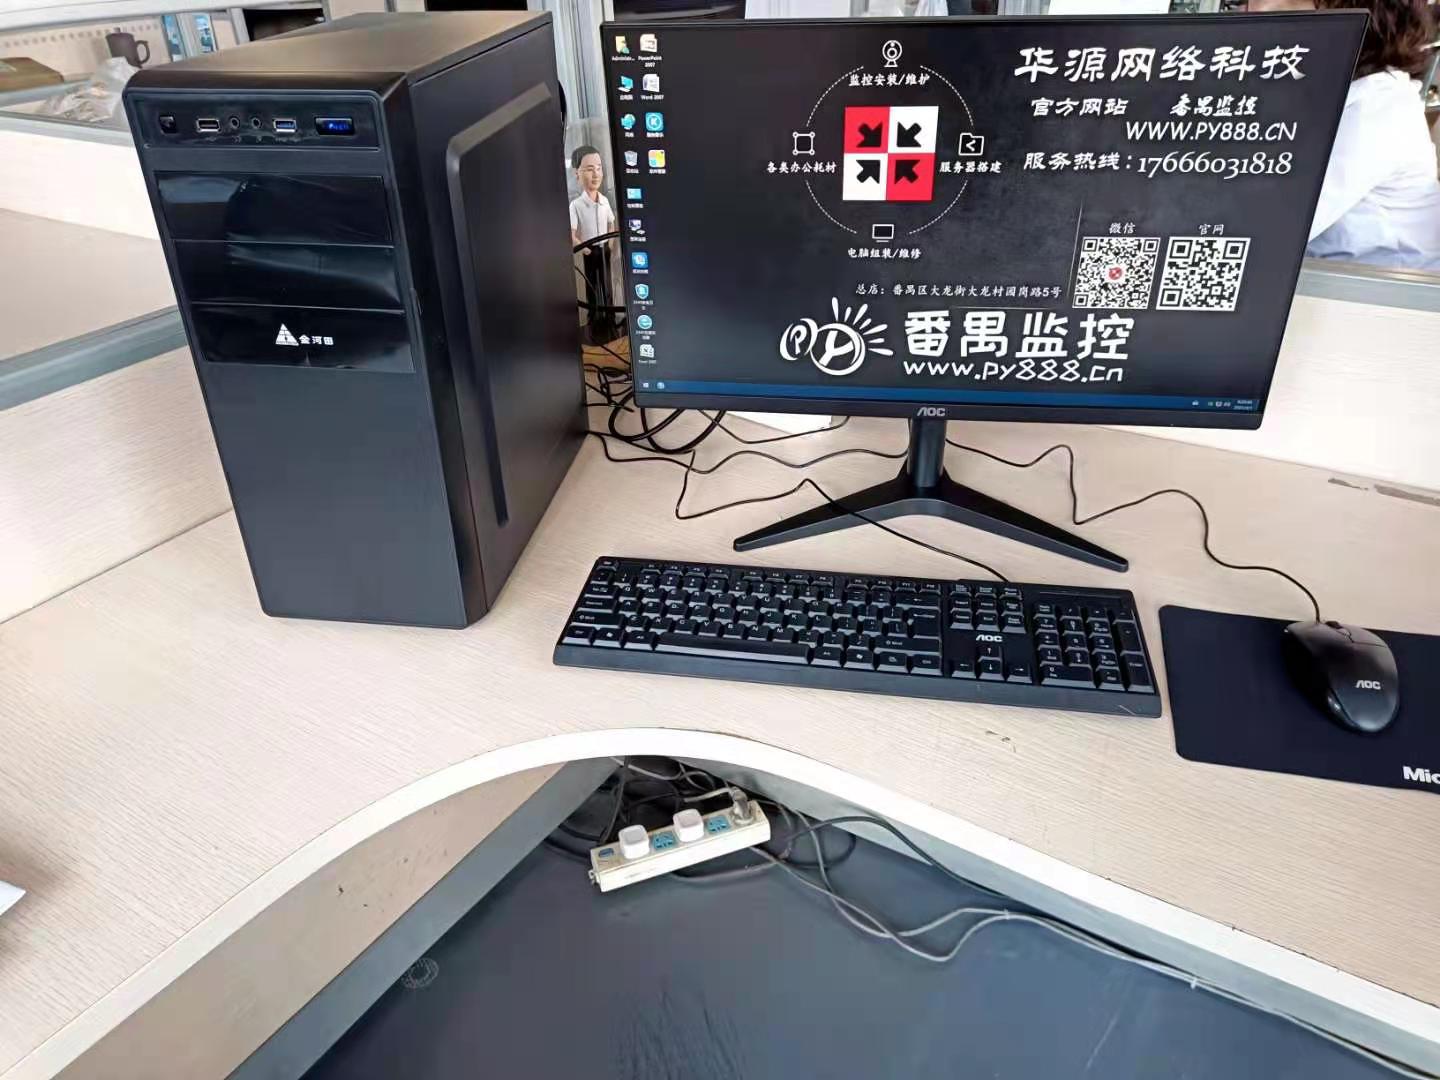 番禺区长坦村某企业单位组装电脑